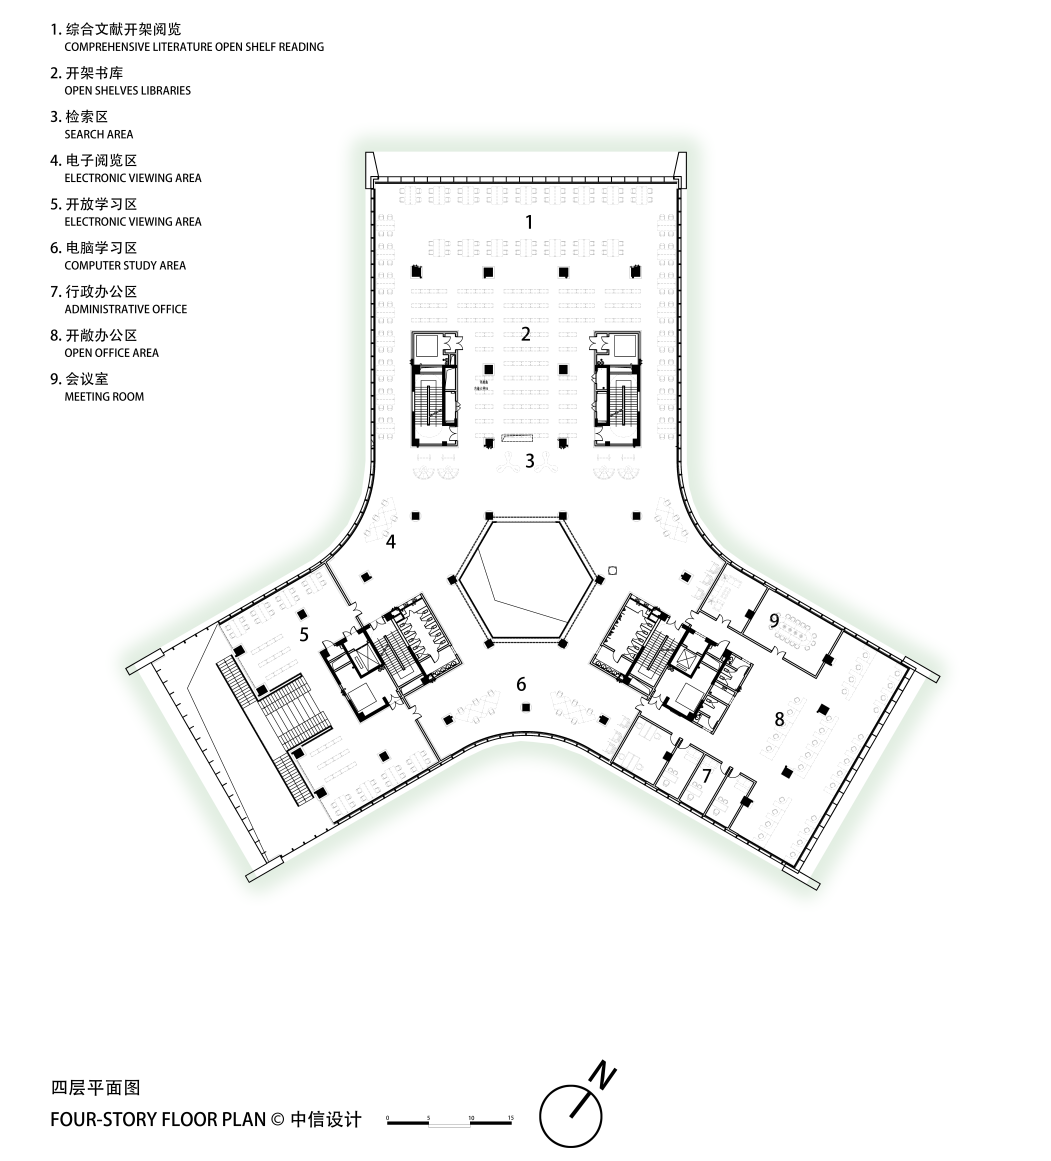 鄂州 葛店文体公园图书馆 建筑设计 / 中信建筑设计院